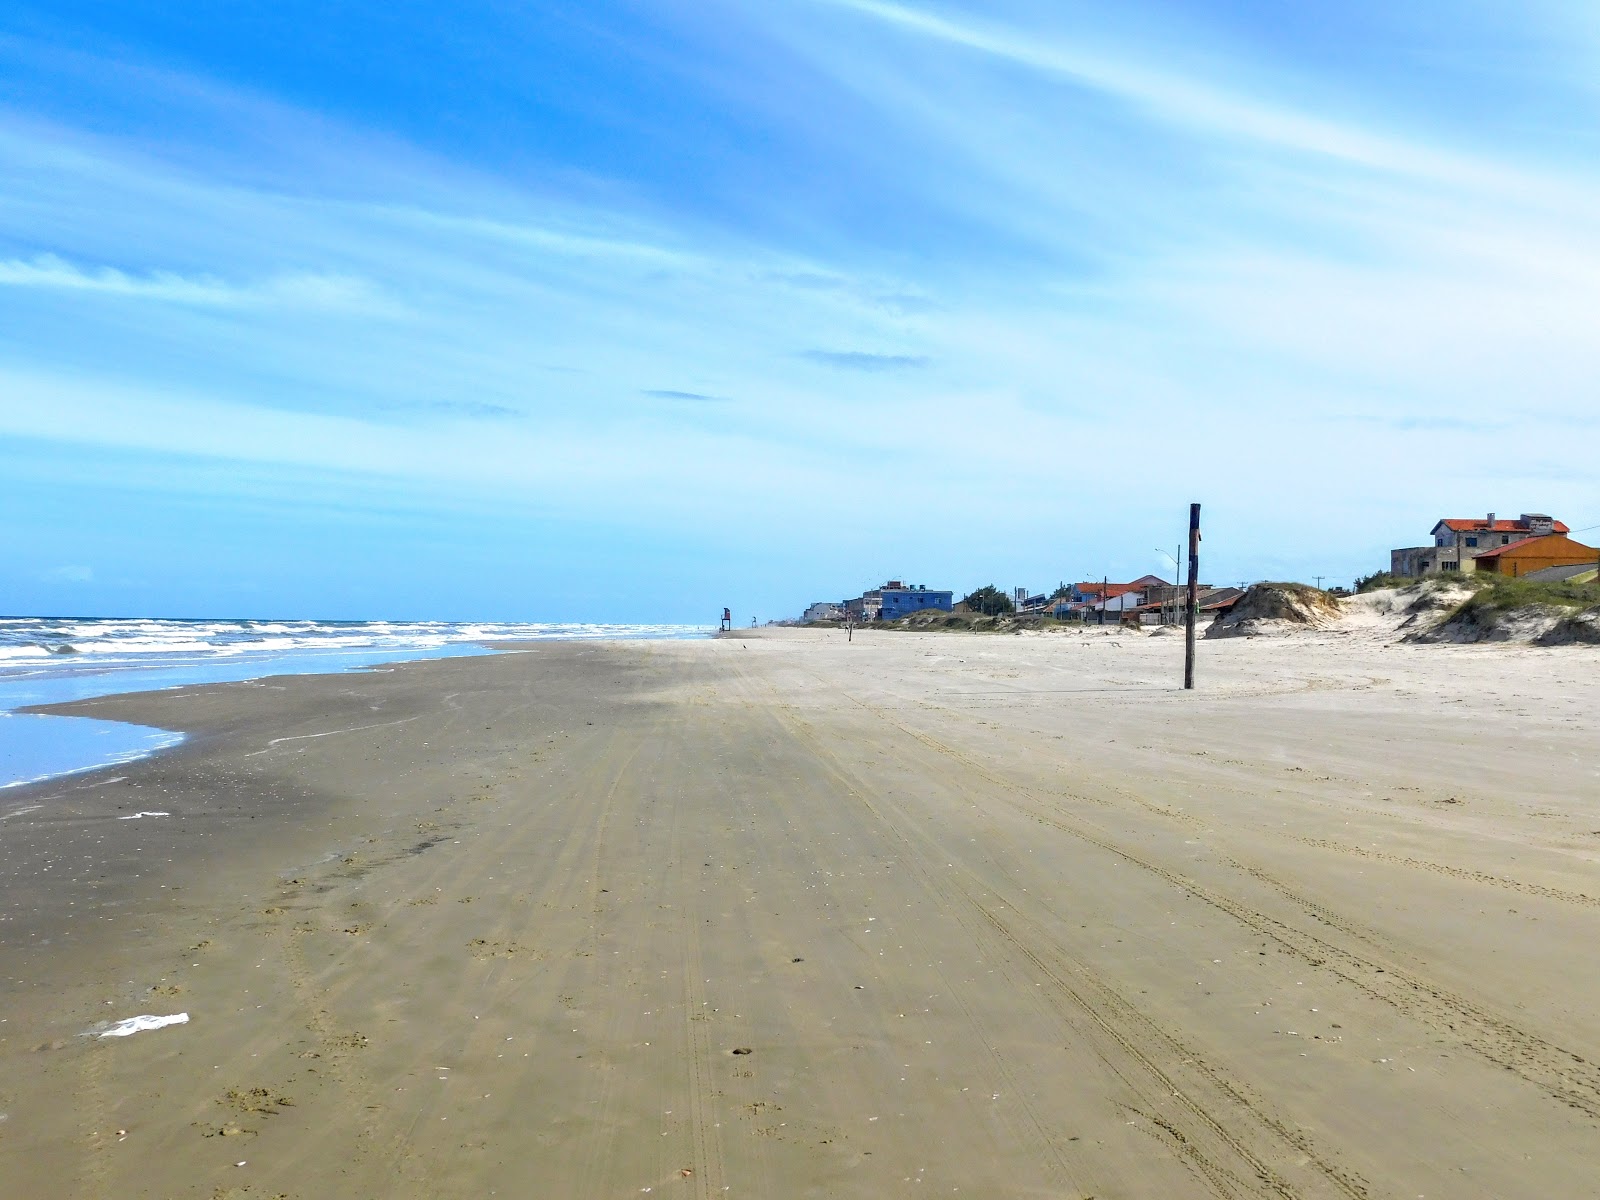 Zdjęcie Praia de Salinas z powierzchnią jasny piasek